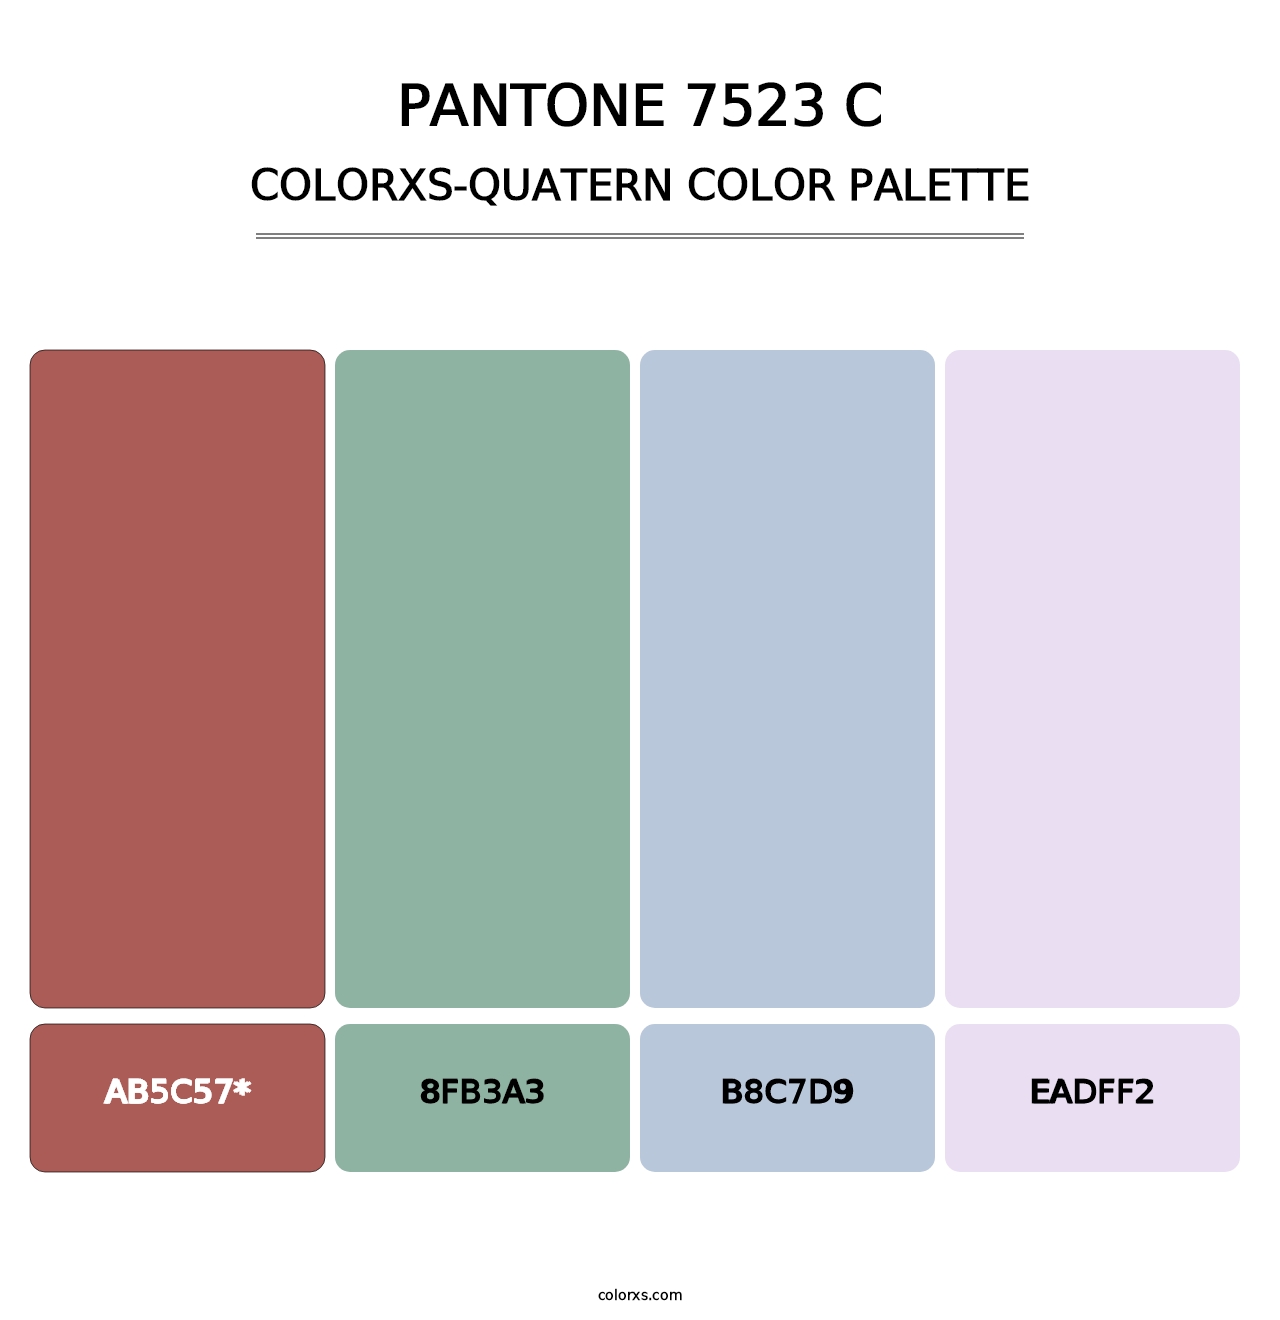 PANTONE 7523 C - Colorxs Quatern Palette